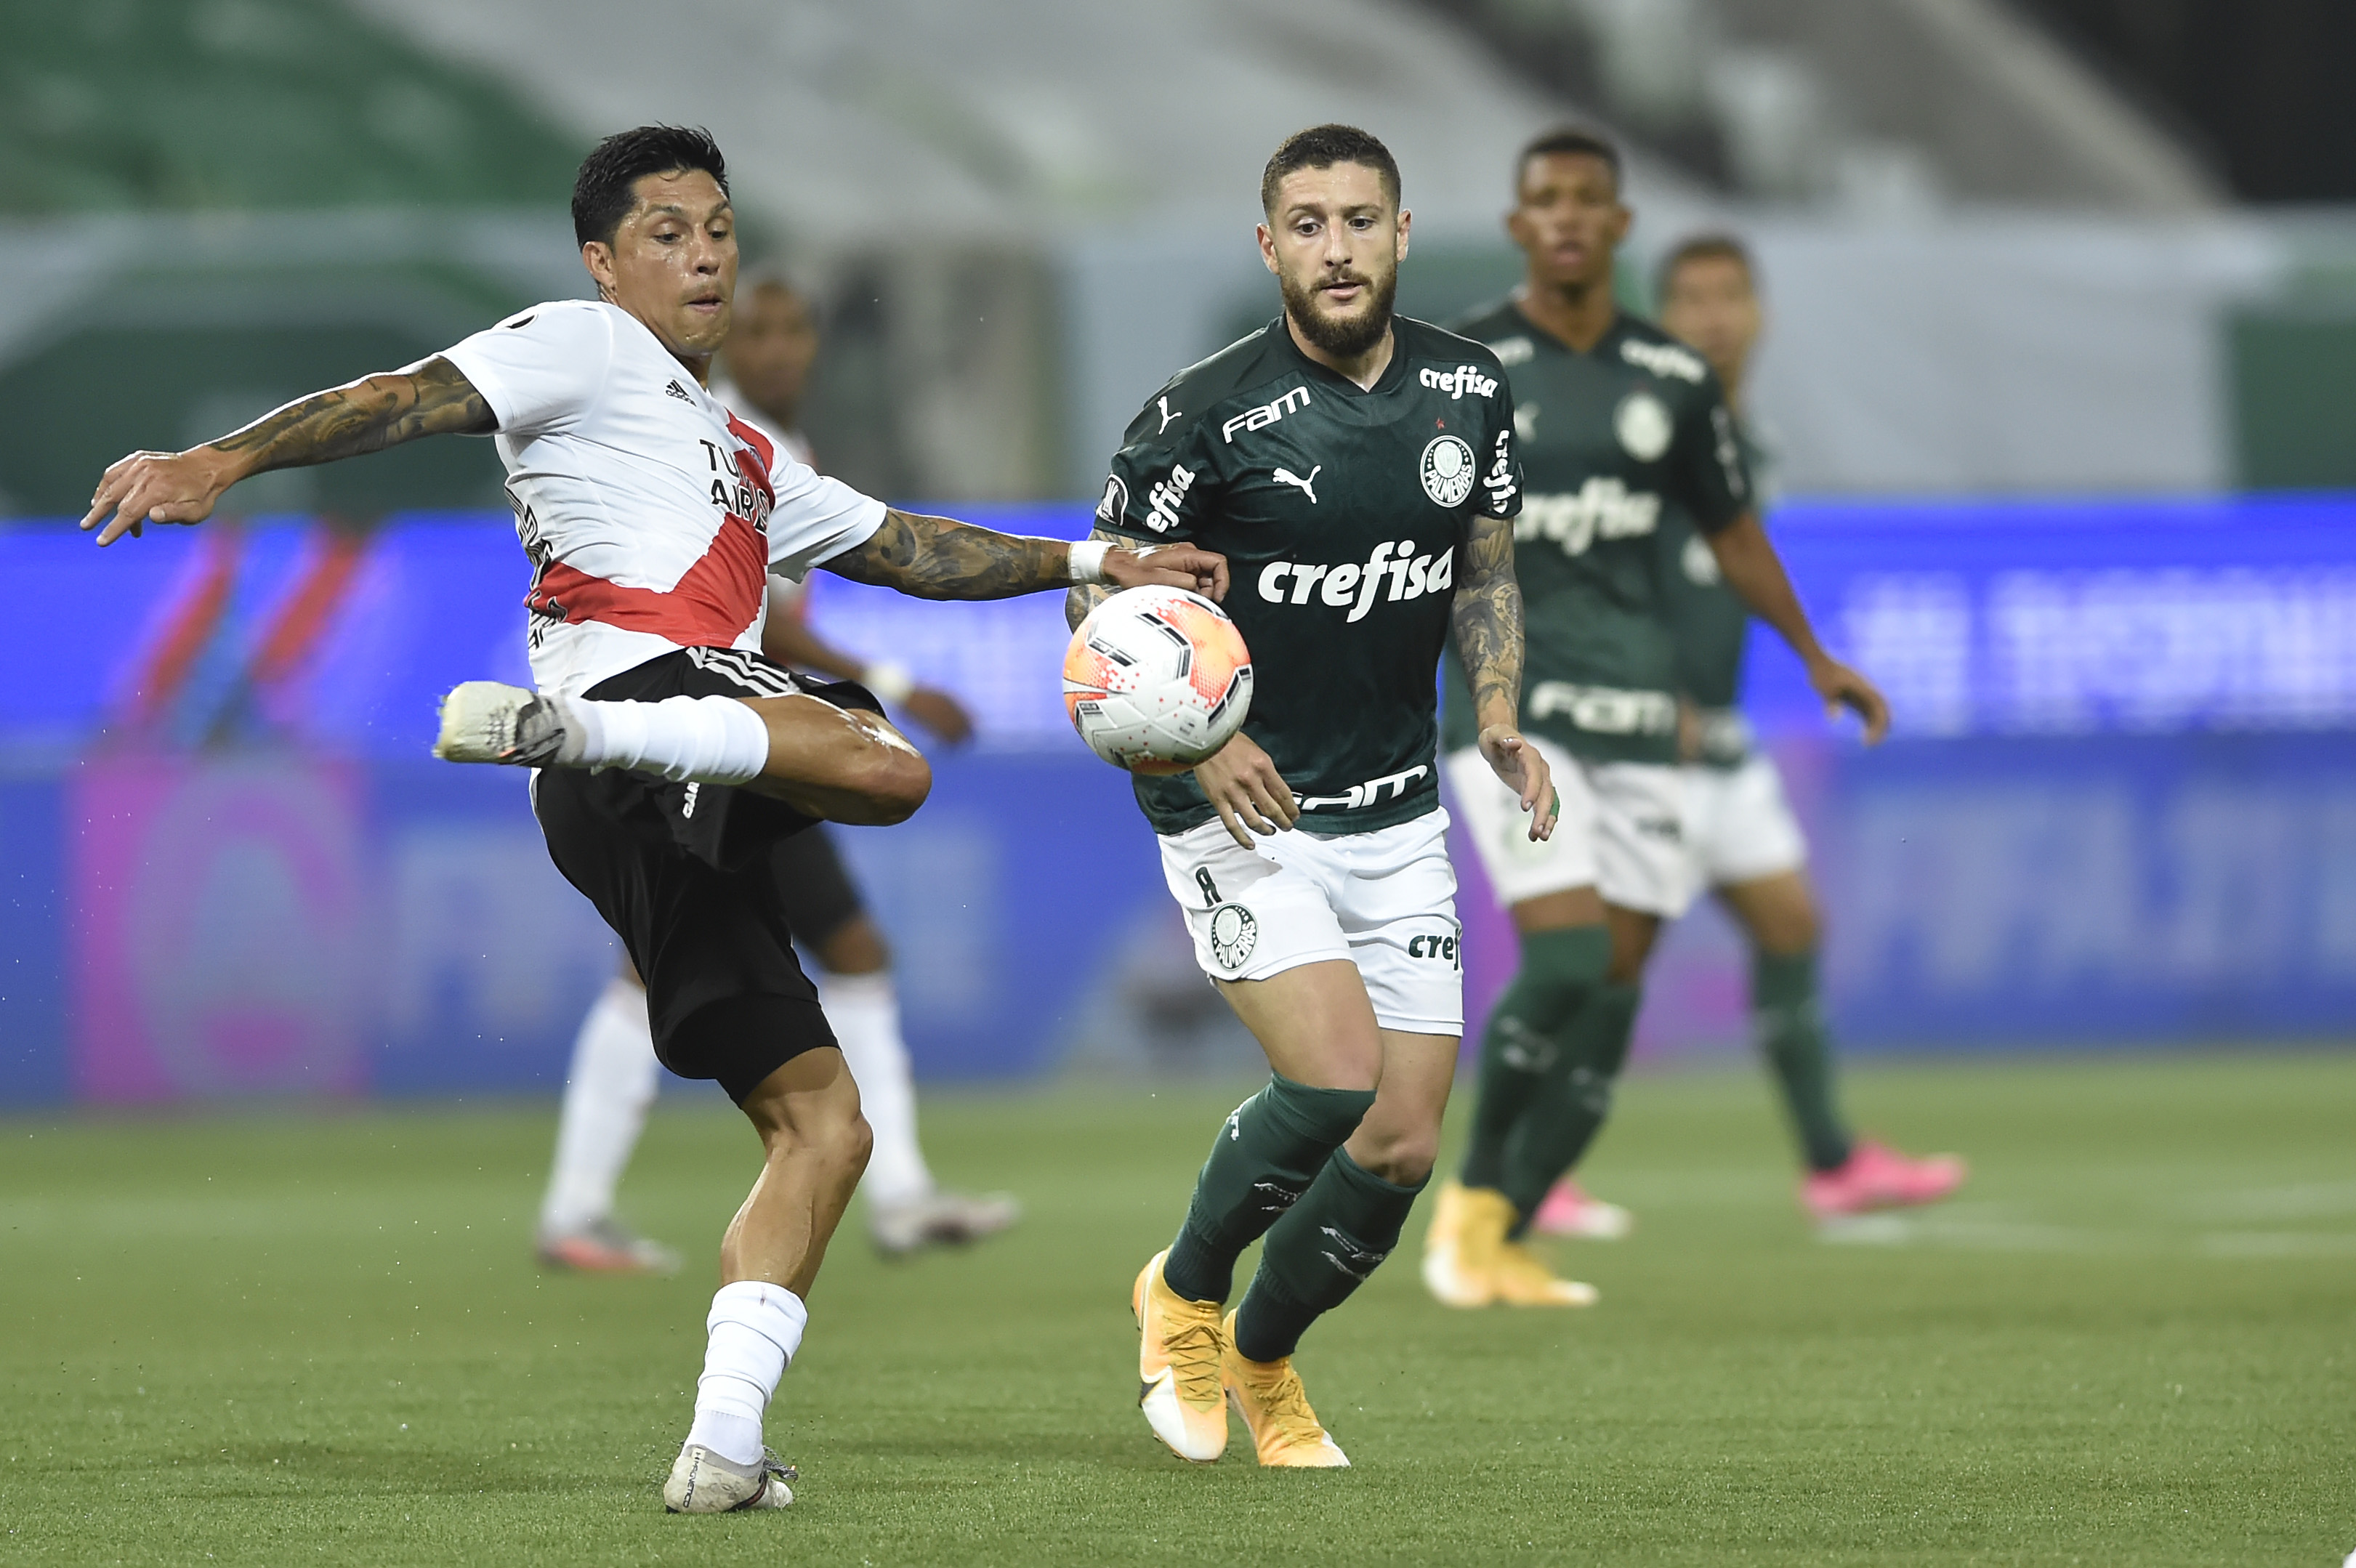 El resultado no fue suficiente para River. Palmeiras es el nuevo finalista de la Libertadores. Foto: @Libertadores